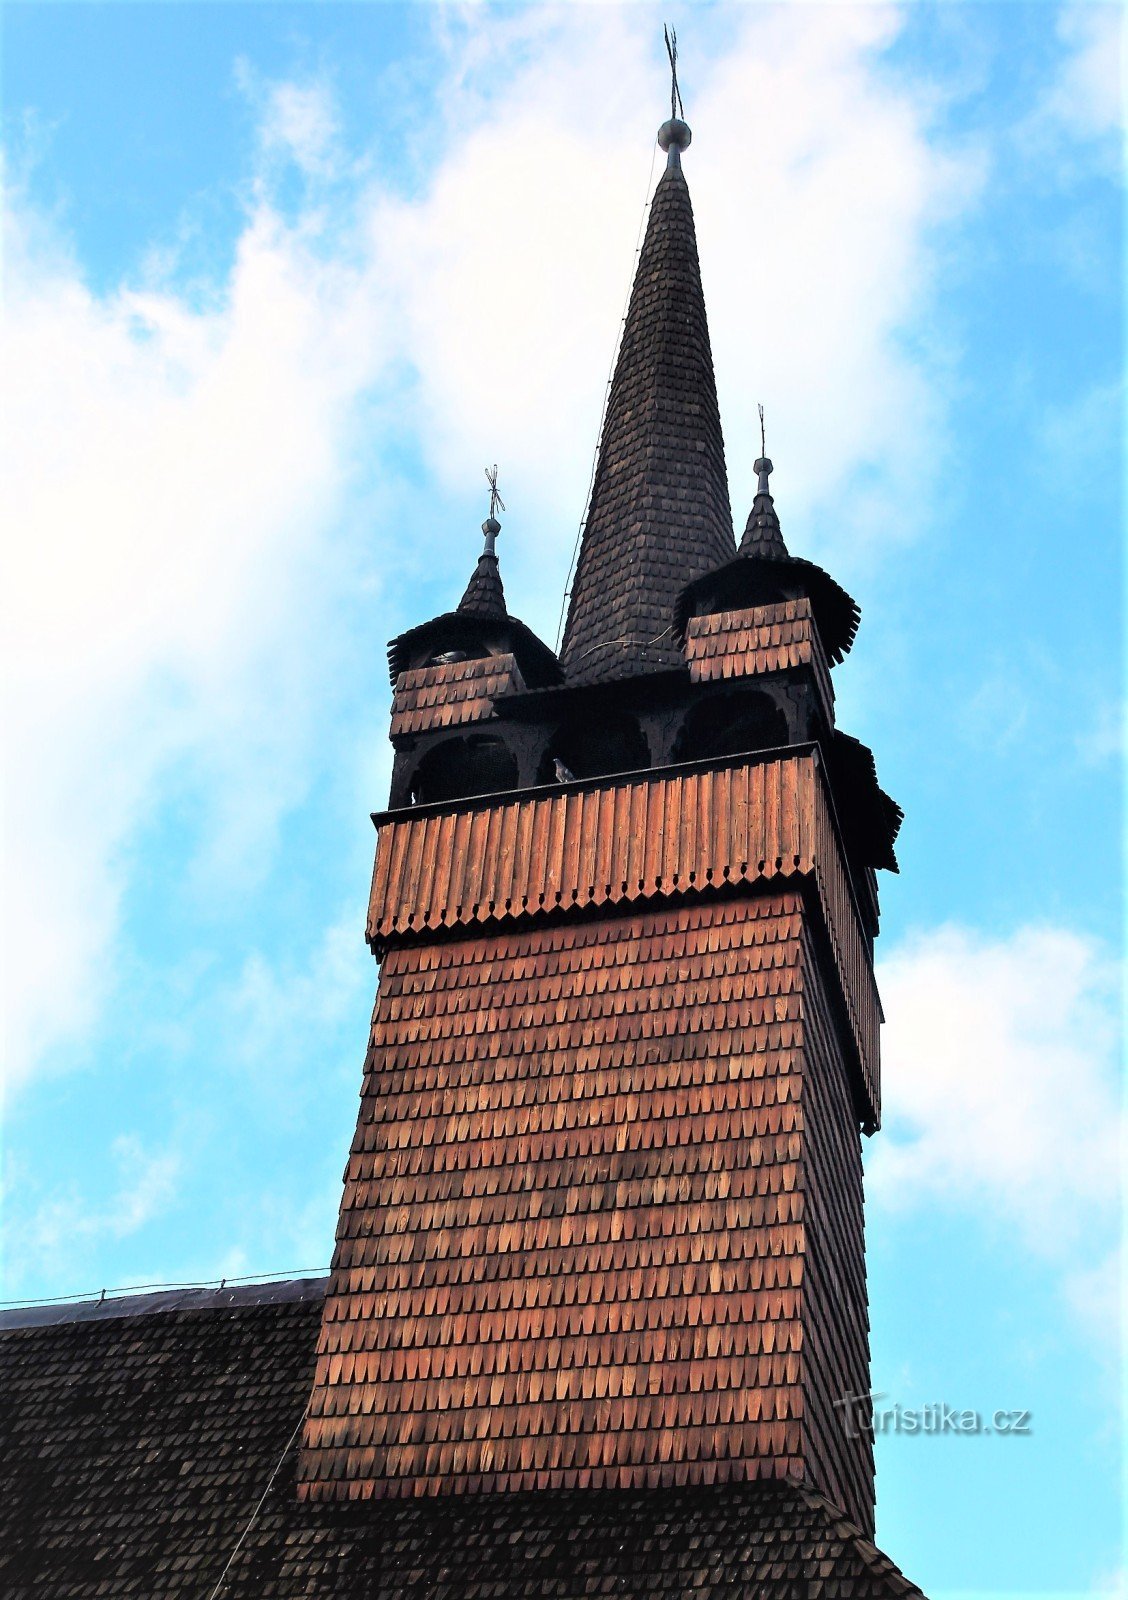 Tháp nhà thờ bốn mặt có mái hình nón với bốn tháp ở góc